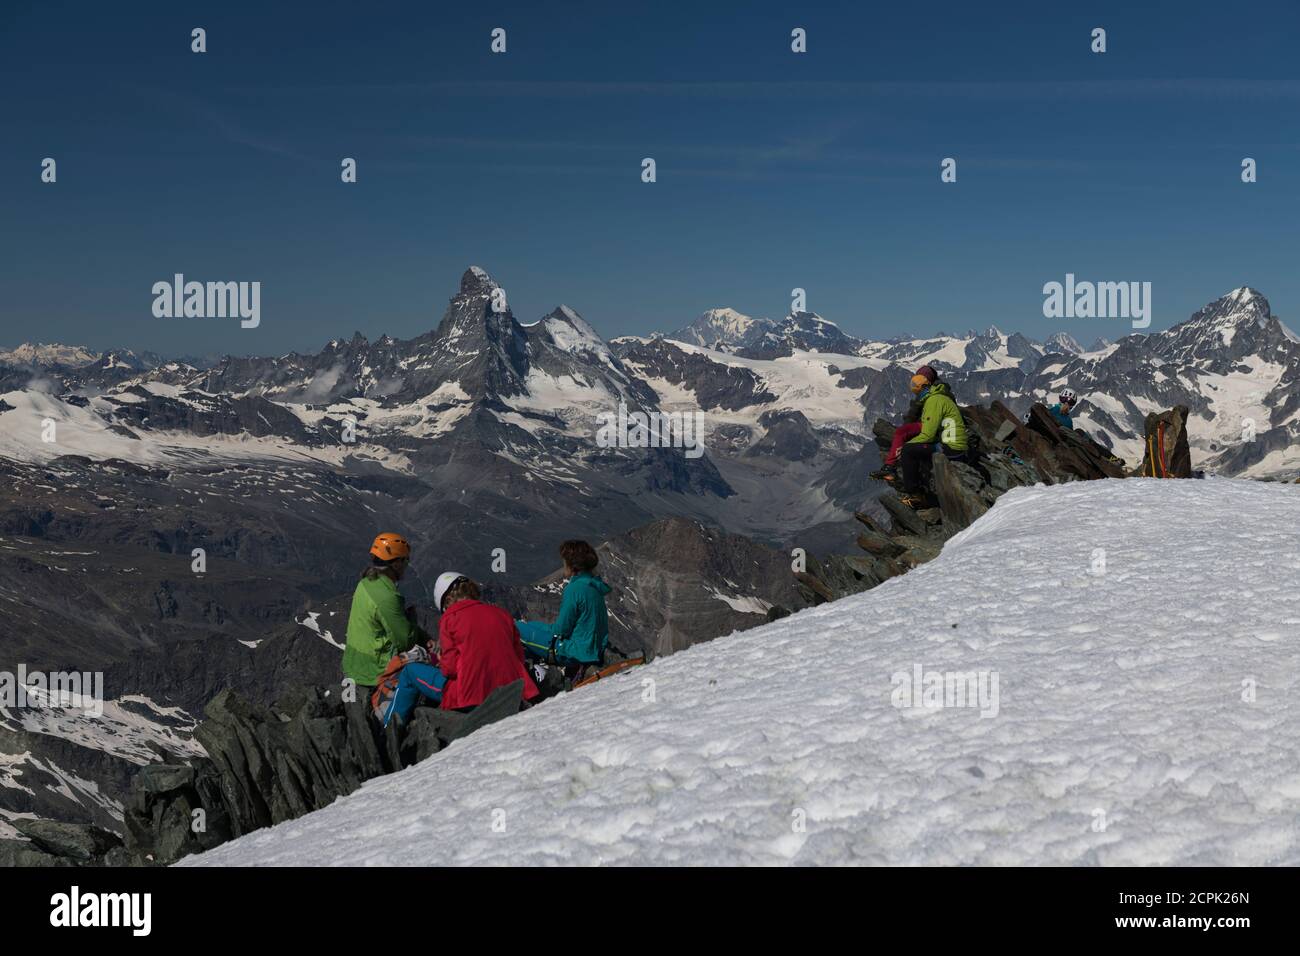 Suisse, Canton du Valais, Vallée de Saas, Saas-Fee, les alpinistes au sommet reposent sur l'Allalinhorn avec Matterhorn, Dent d'Herens, Mont blanc, G. Banque D'Images